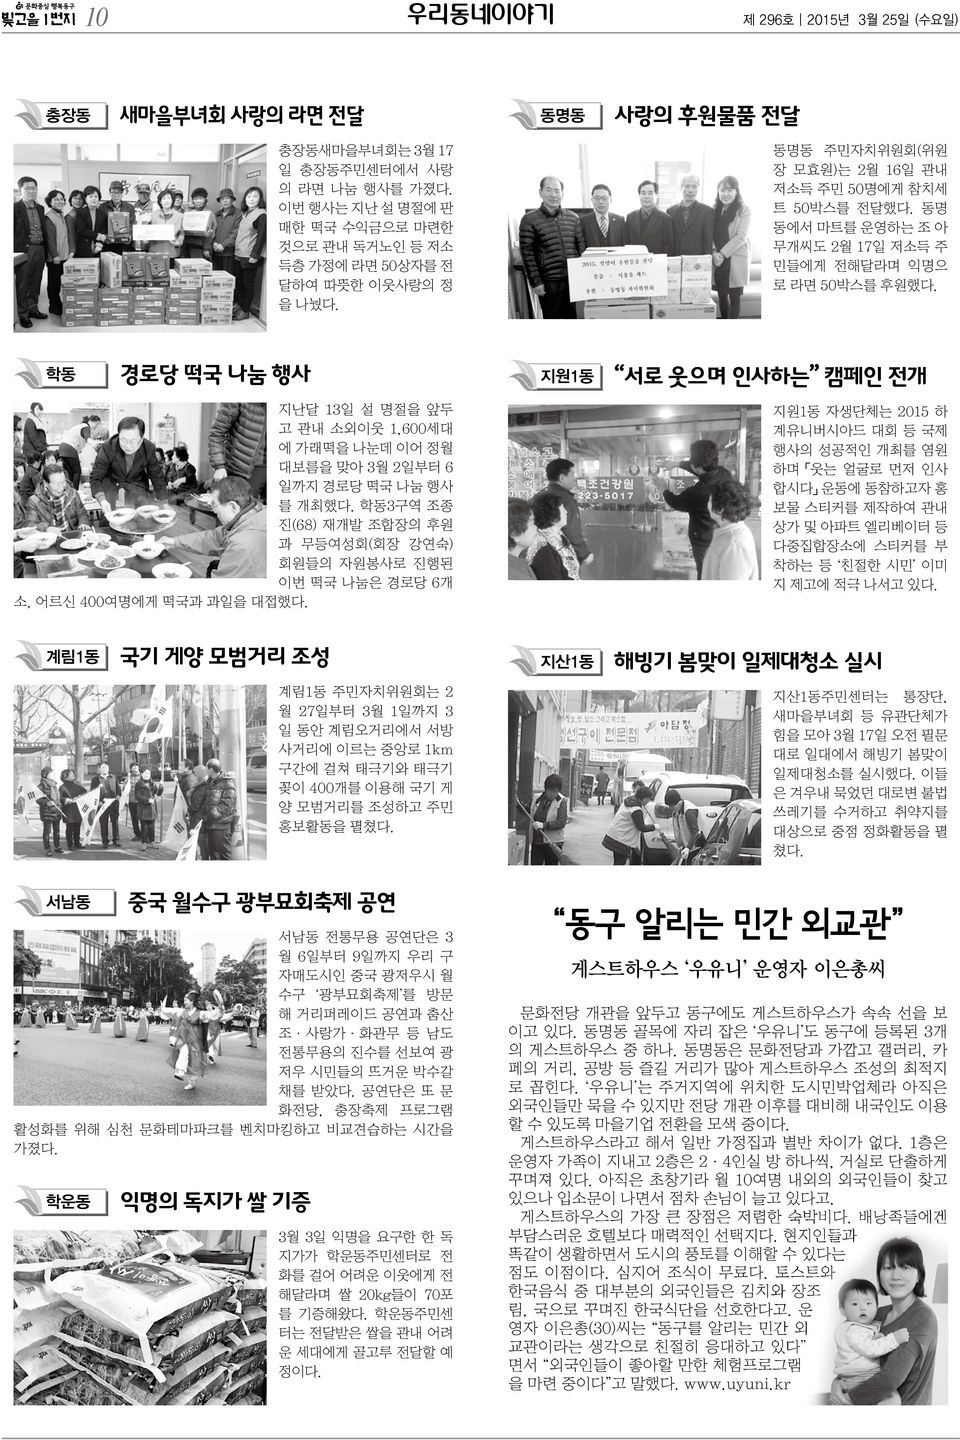 동명 동에서 마트를 운영하는 조 아 무개씨도 2월 17일 저소득 주 민들에게 전해달라며 익명으 로 라면 50박스를 후원했다.